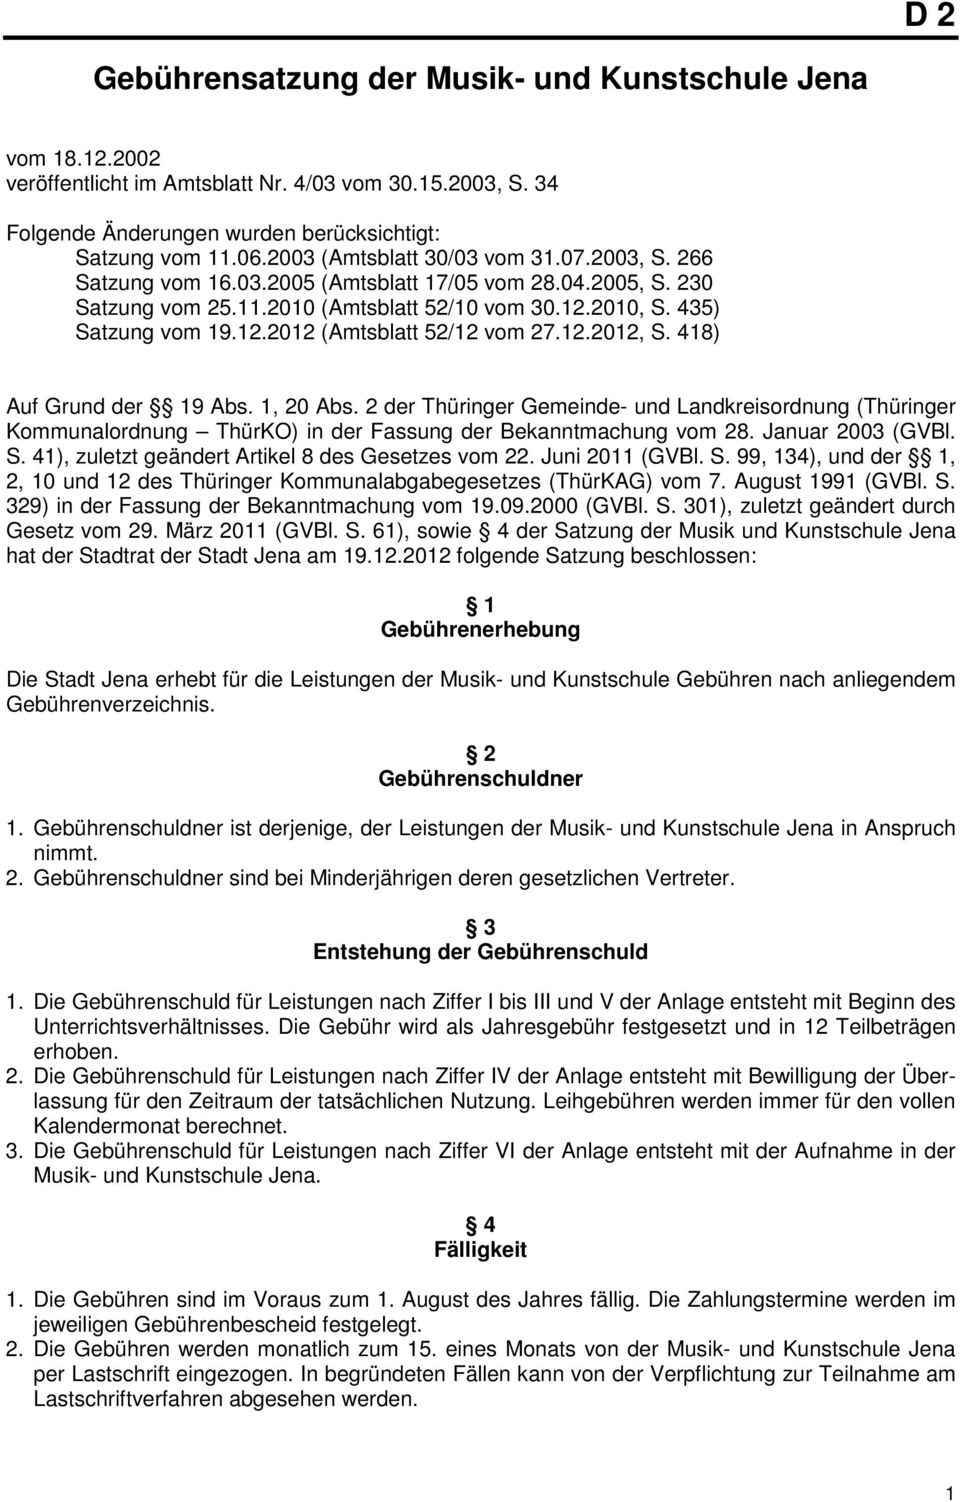 12.2012, S. 418) Auf Grund der 19 Abs. 1, 20 Abs. 2 der Thüringer Gemeinde- und Landkreisordnung (Thüringer Kommunalordnung ThürKO) in der Fassung der Bekanntmachung vom 28. Januar 2003 (GVBl. S. 41), zuletzt geändert Artikel 8 des Gesetzes vom 22.